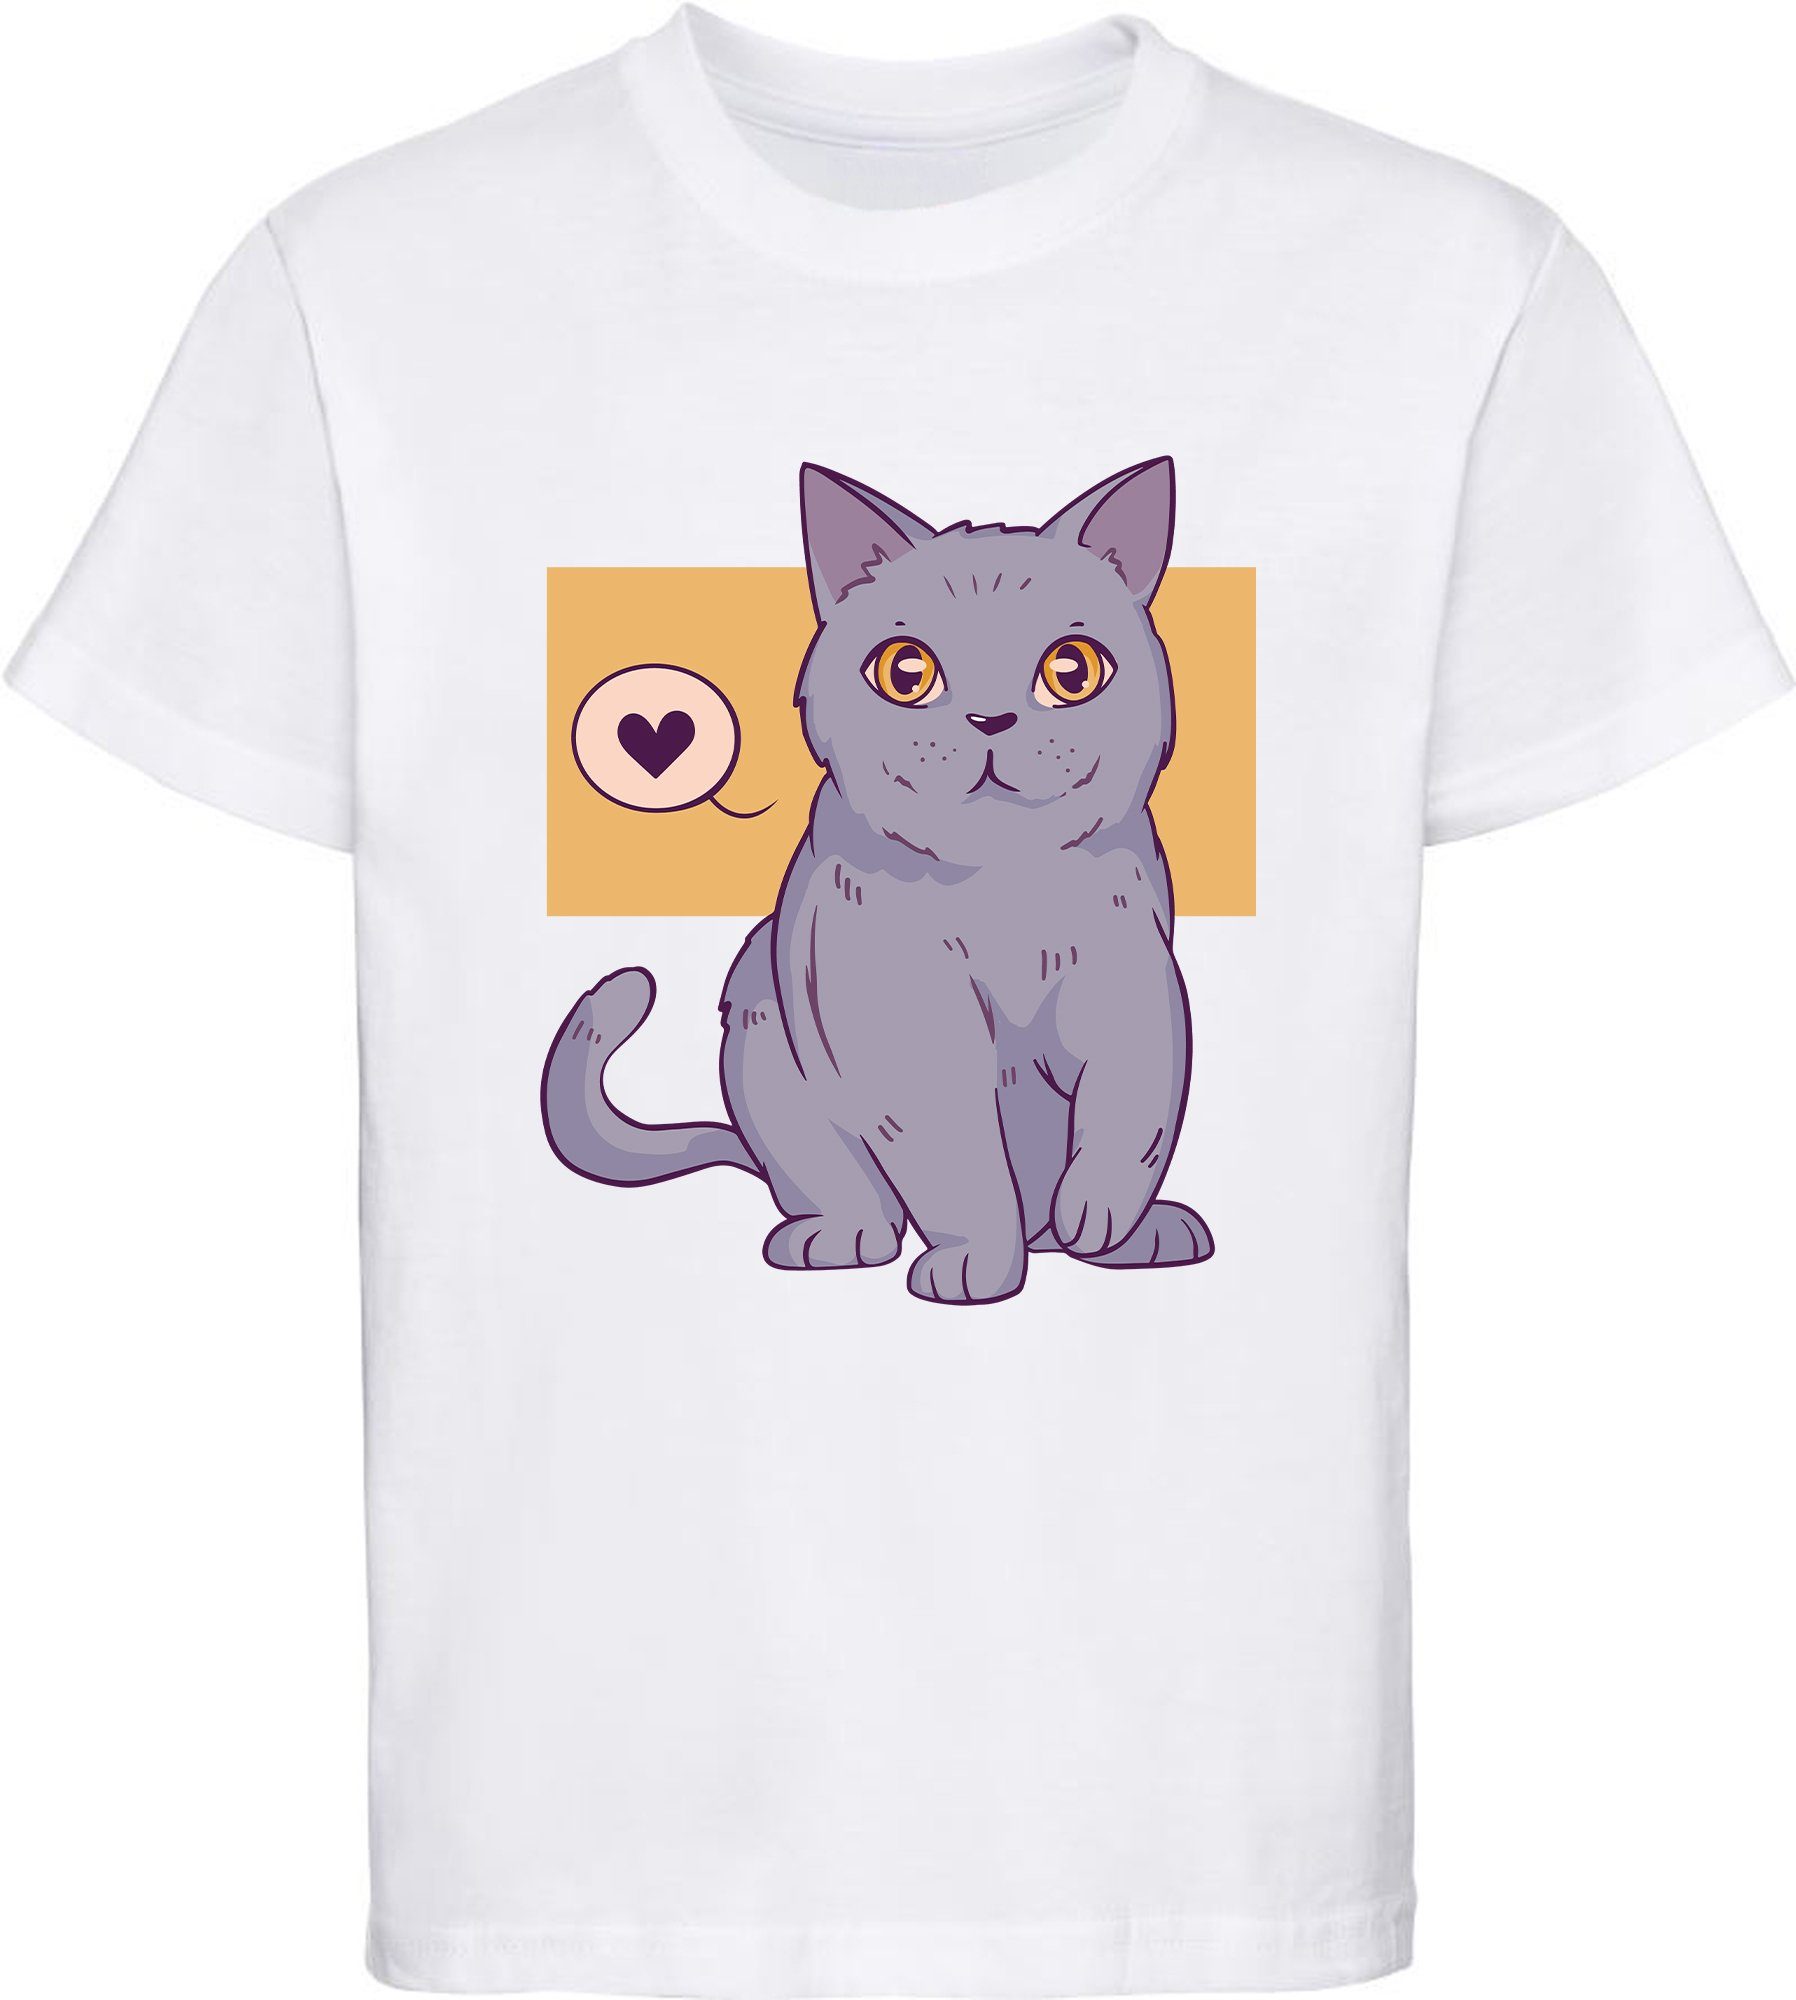 MyDesign24 Print-Shirt bedrucktes Mädchen T-Shirt Katze mit Herz Baumwollshirt mit Aufdruck, weiß, schwarz, rot, rosa, i129 weiss